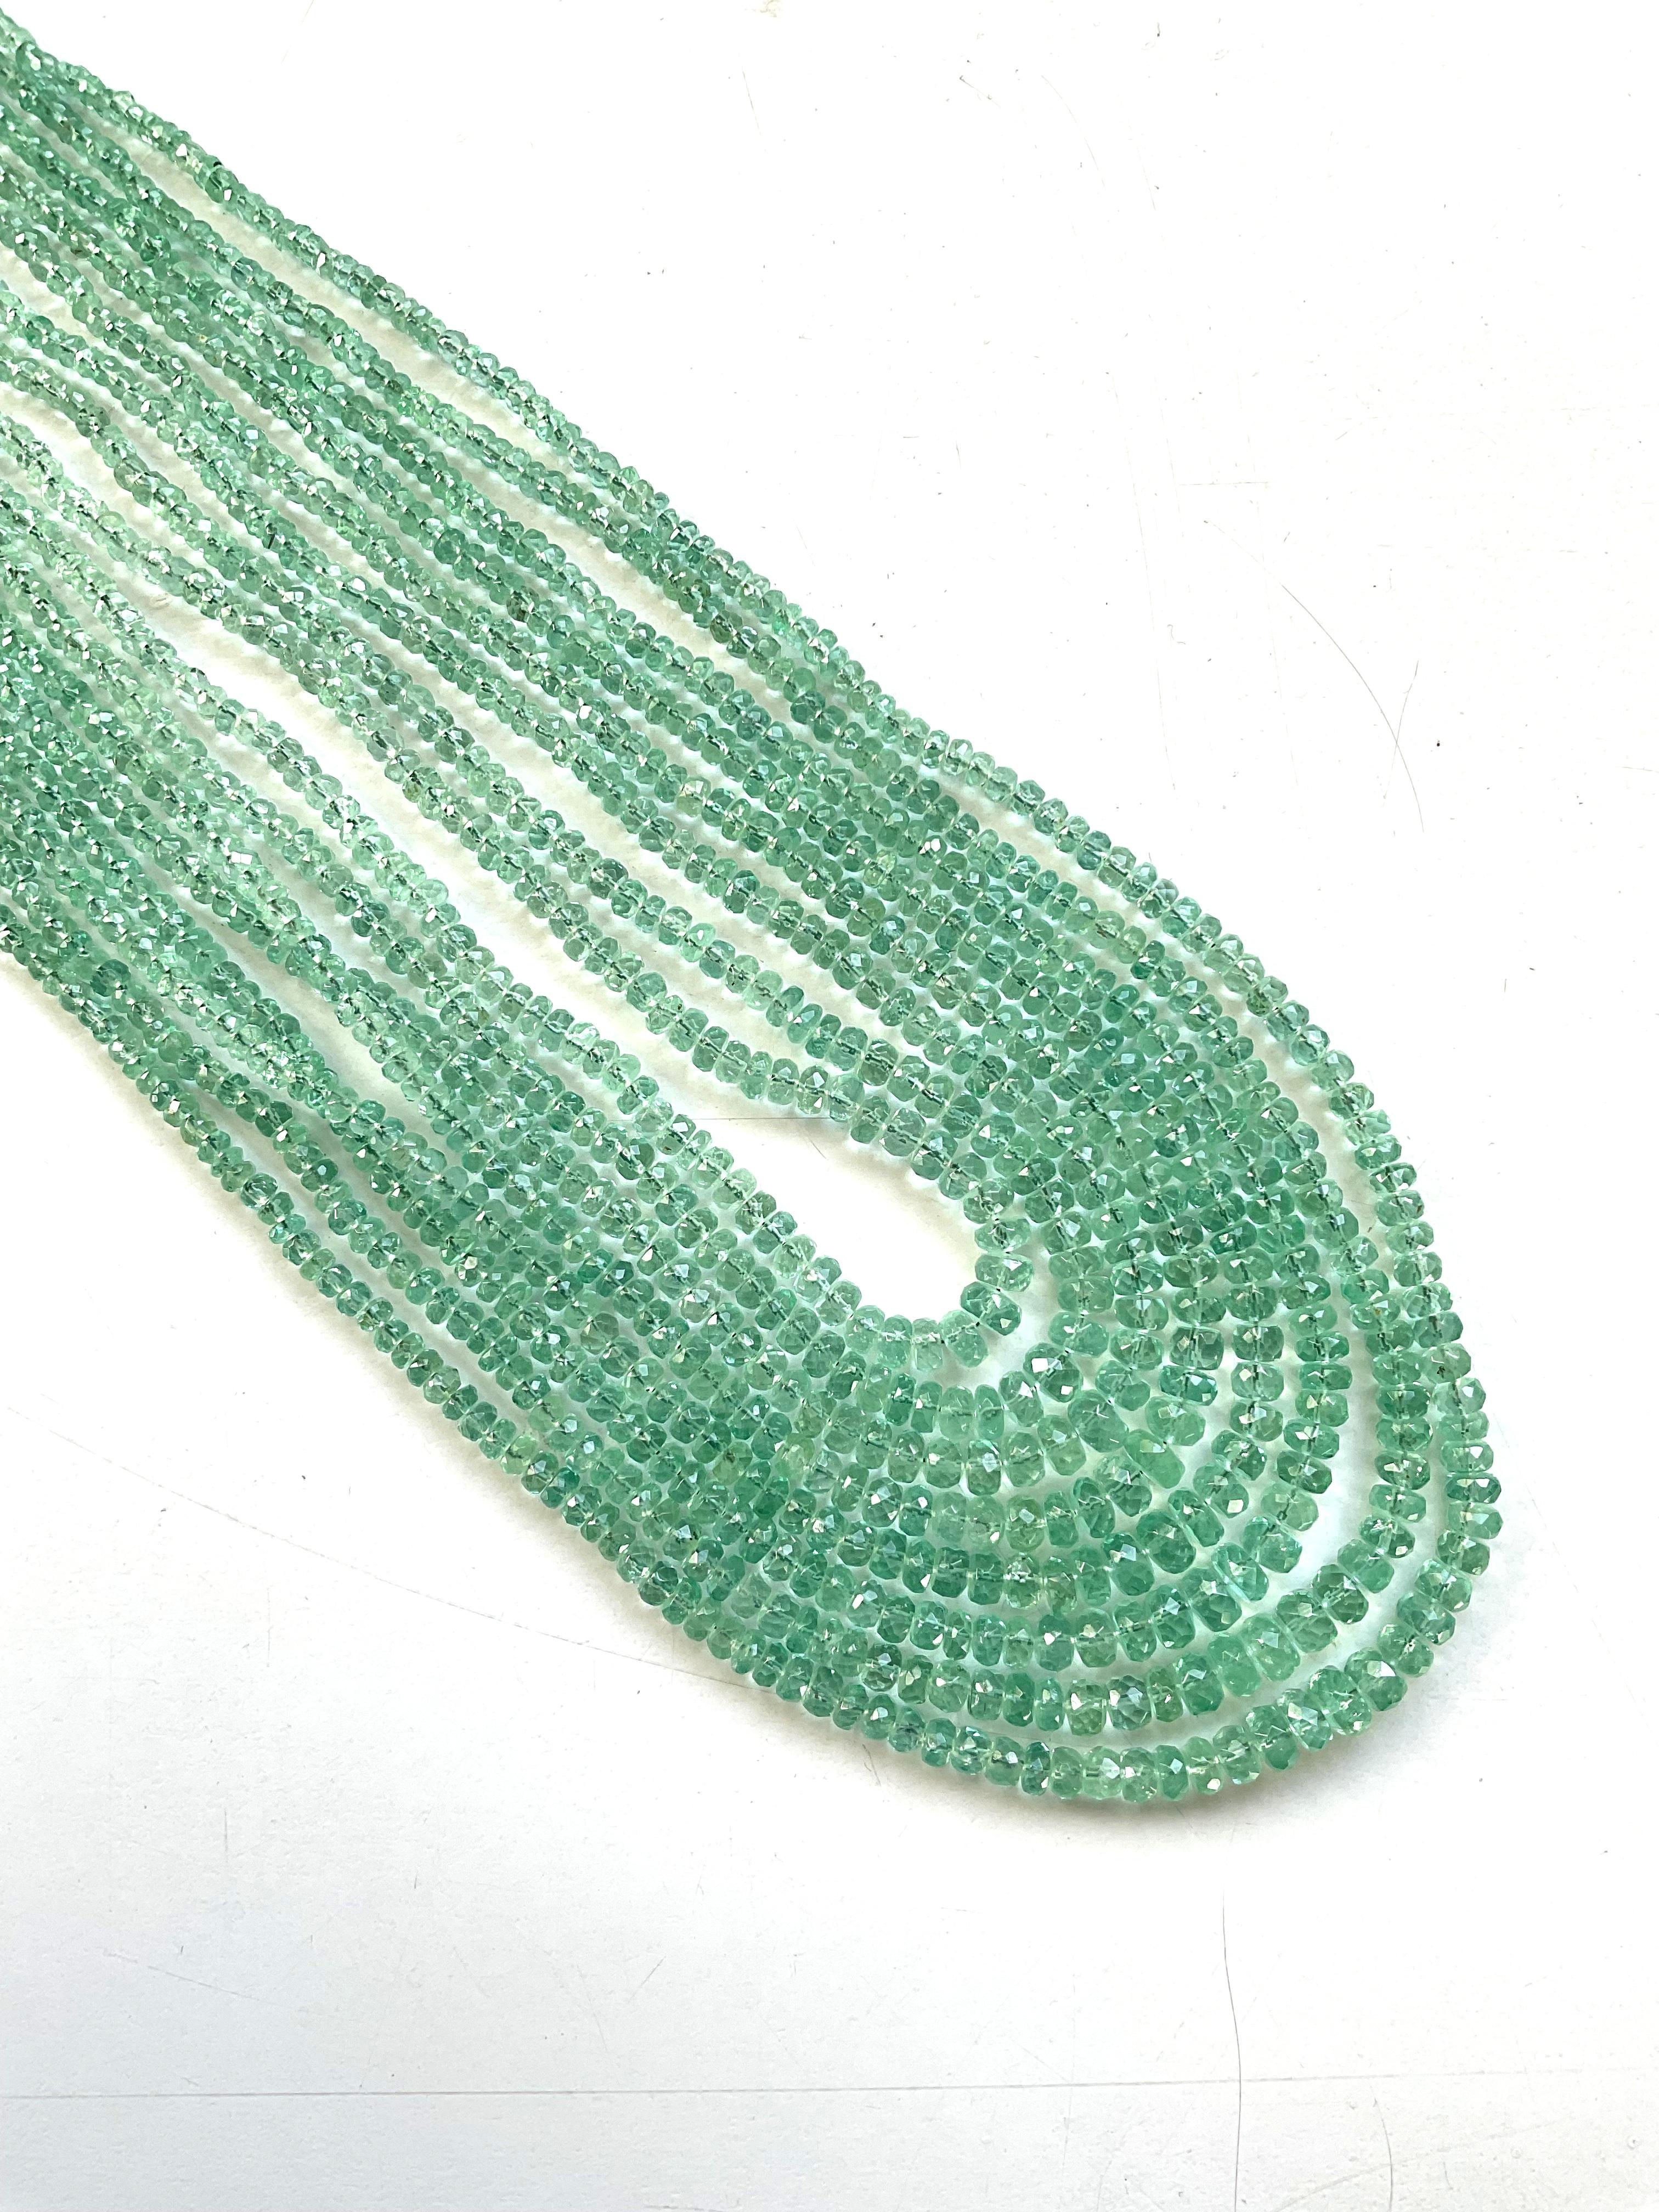 342.09 Carats Panjshir Emerald Faceted Beads For Fine Jewelry Natural Gemstone (Perles à facettes en émeraude du Panjshir pour la joaillerie fine)
Pierre précieuse - Emeraude
Poids - 342,09 carats
Forme - Perles
Taille - 2,5 à 5 MM
Quantité - 8 ligne